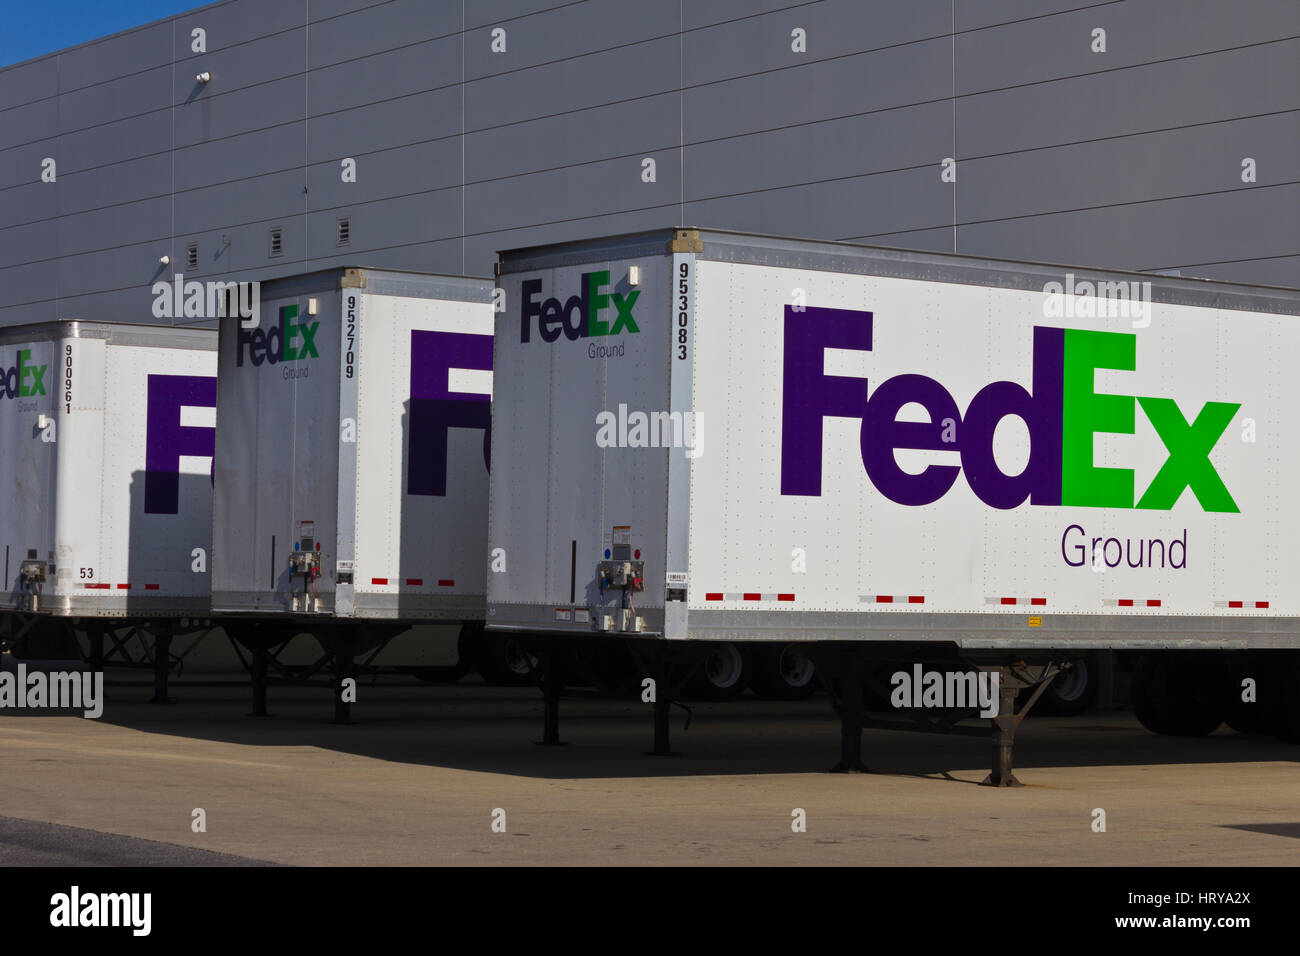 Indianapolis - Circa Décembre 2015 : Federal Express camions dans les quais de chargement. FedEx est une société de services de livraison de courrier mondial II Banque D'Images